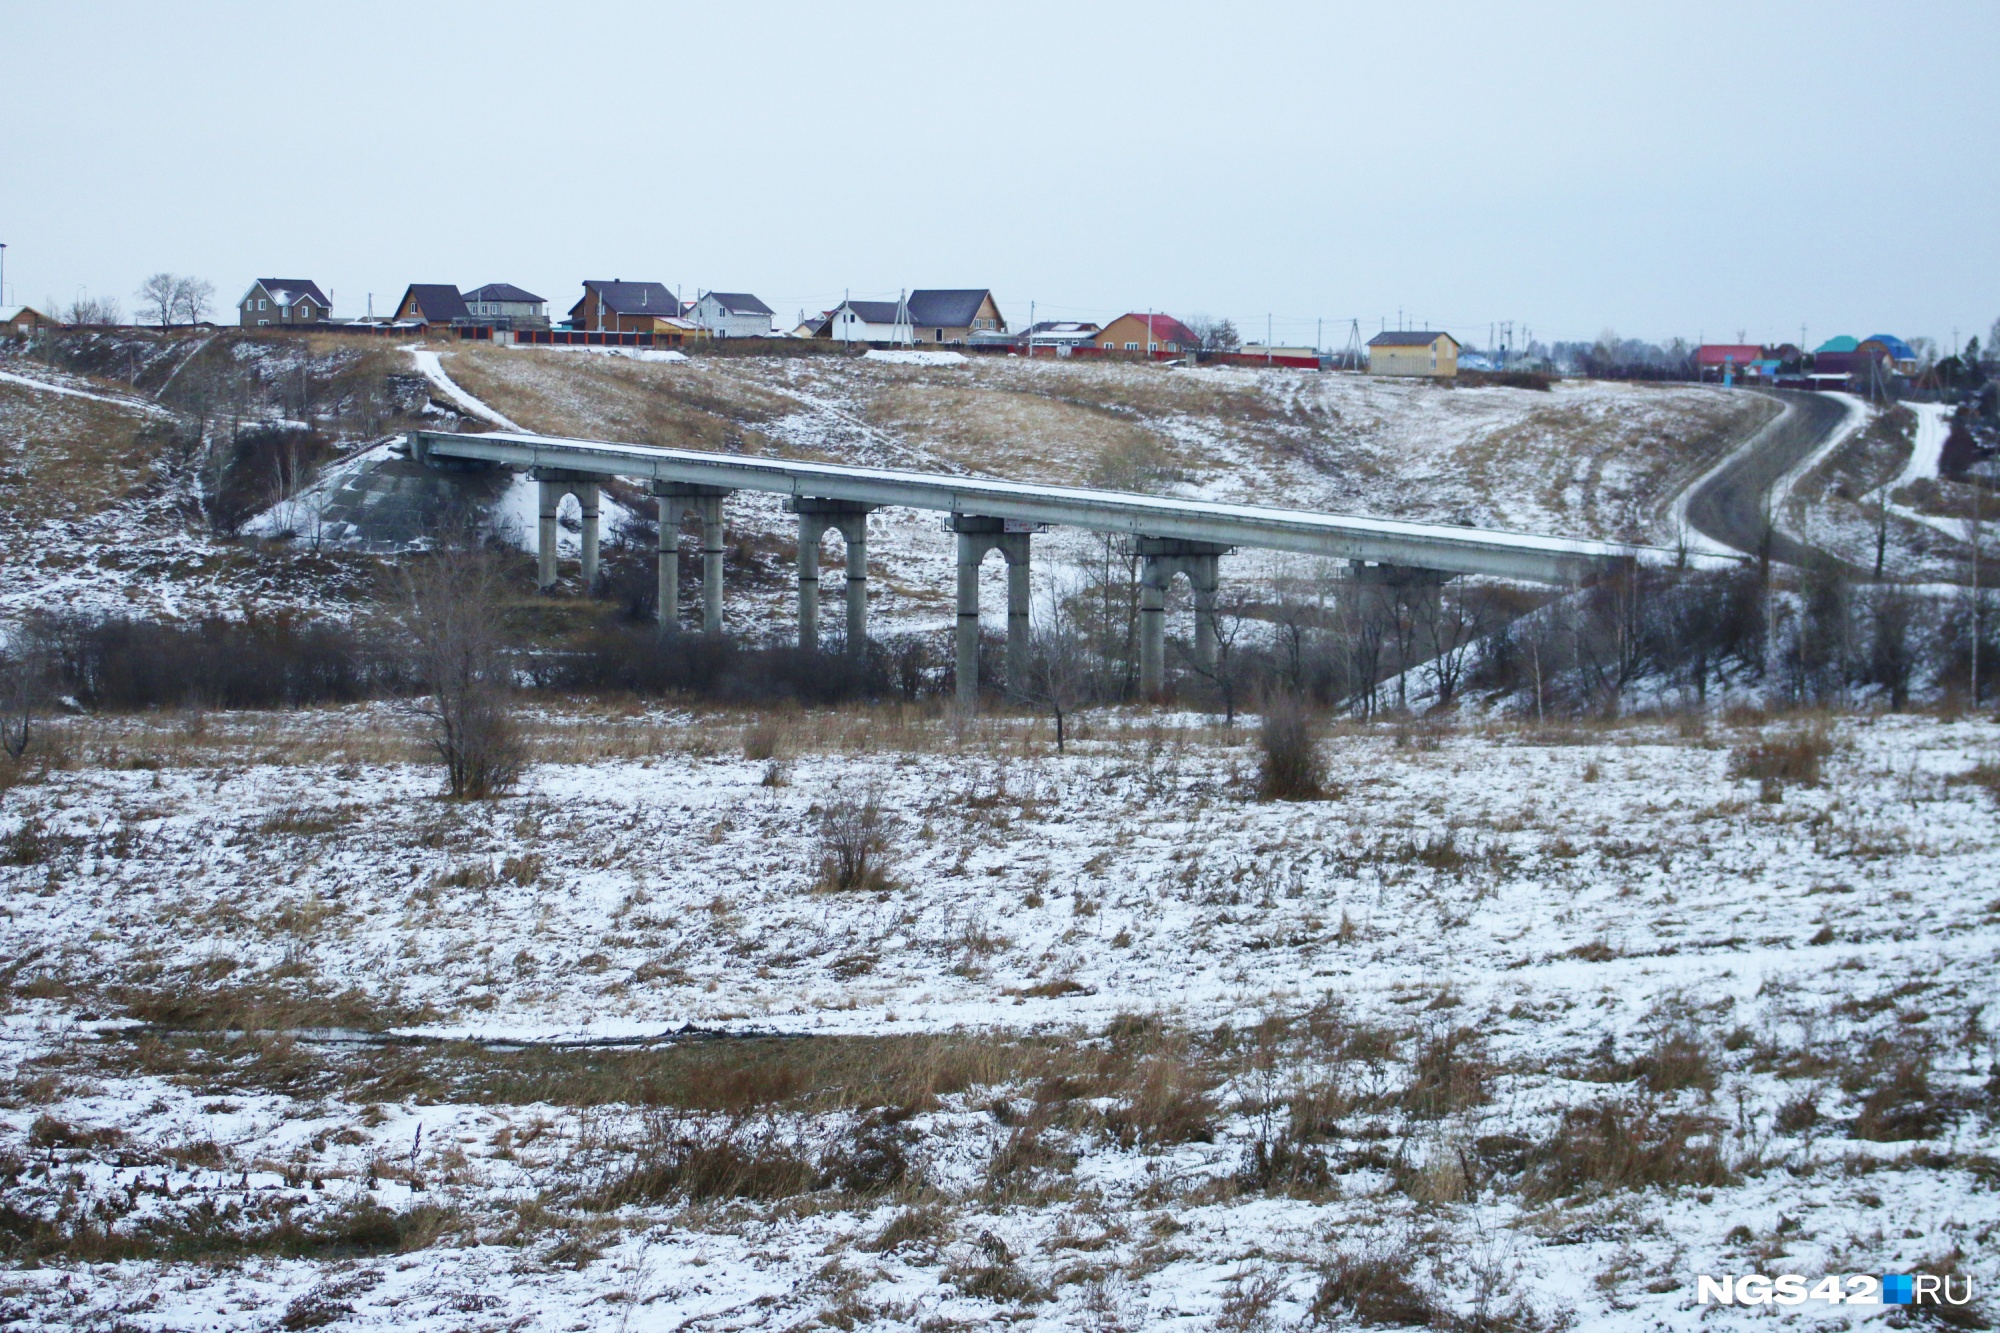 Сооружение находится практически на границе между Новокузнецком и Новокузнецким районом